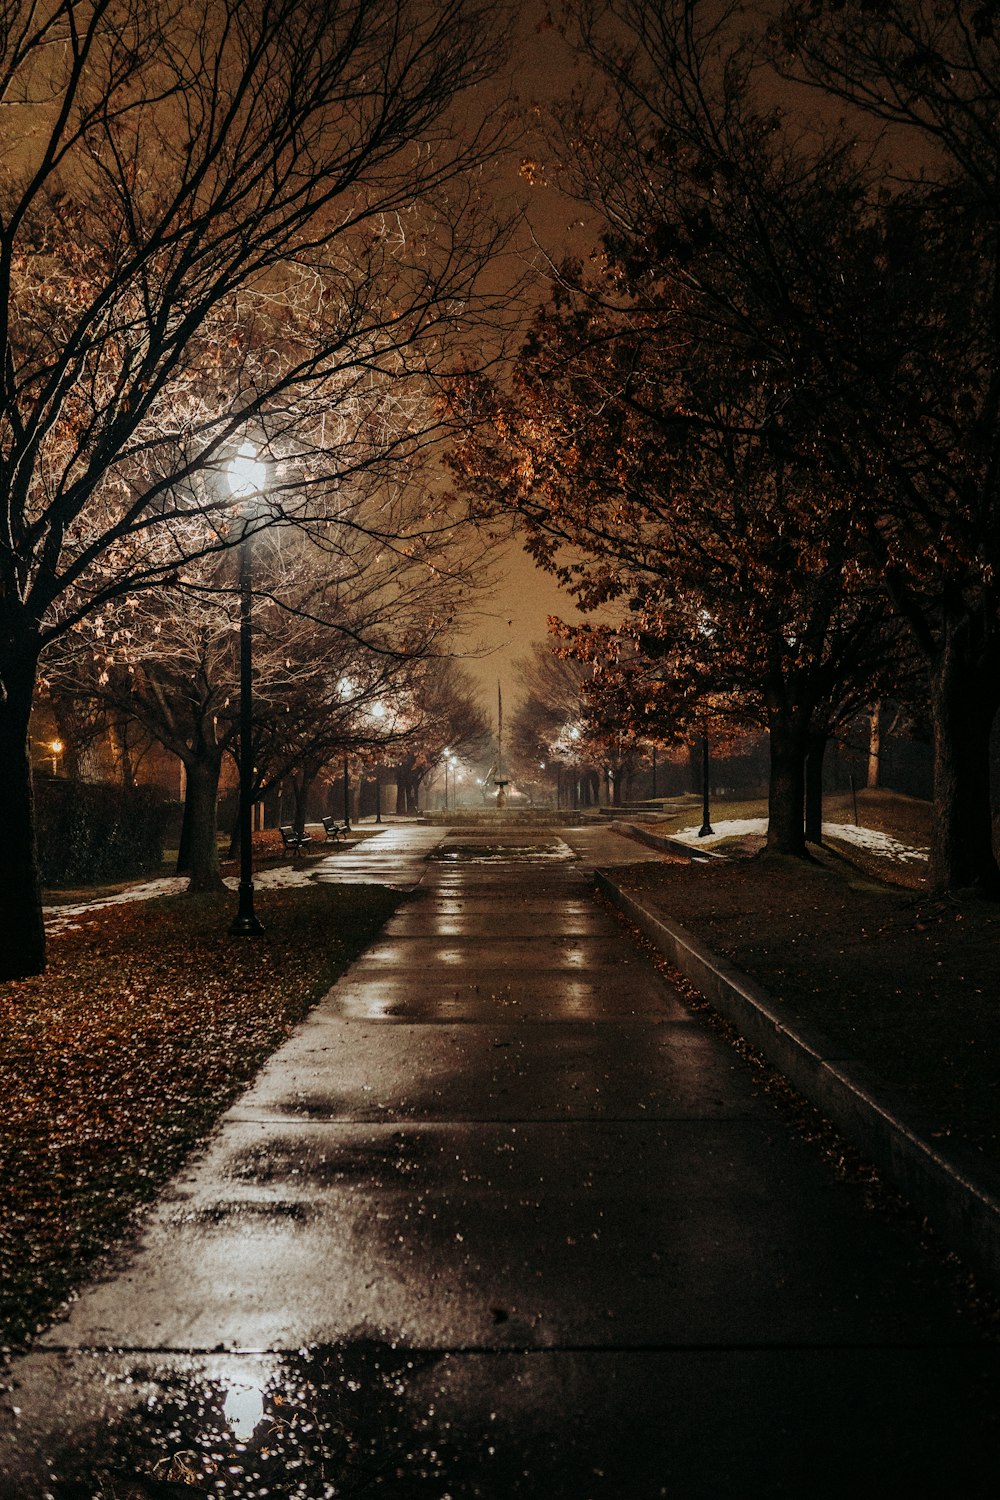 strada di cemento tra gli alberi durante la notte